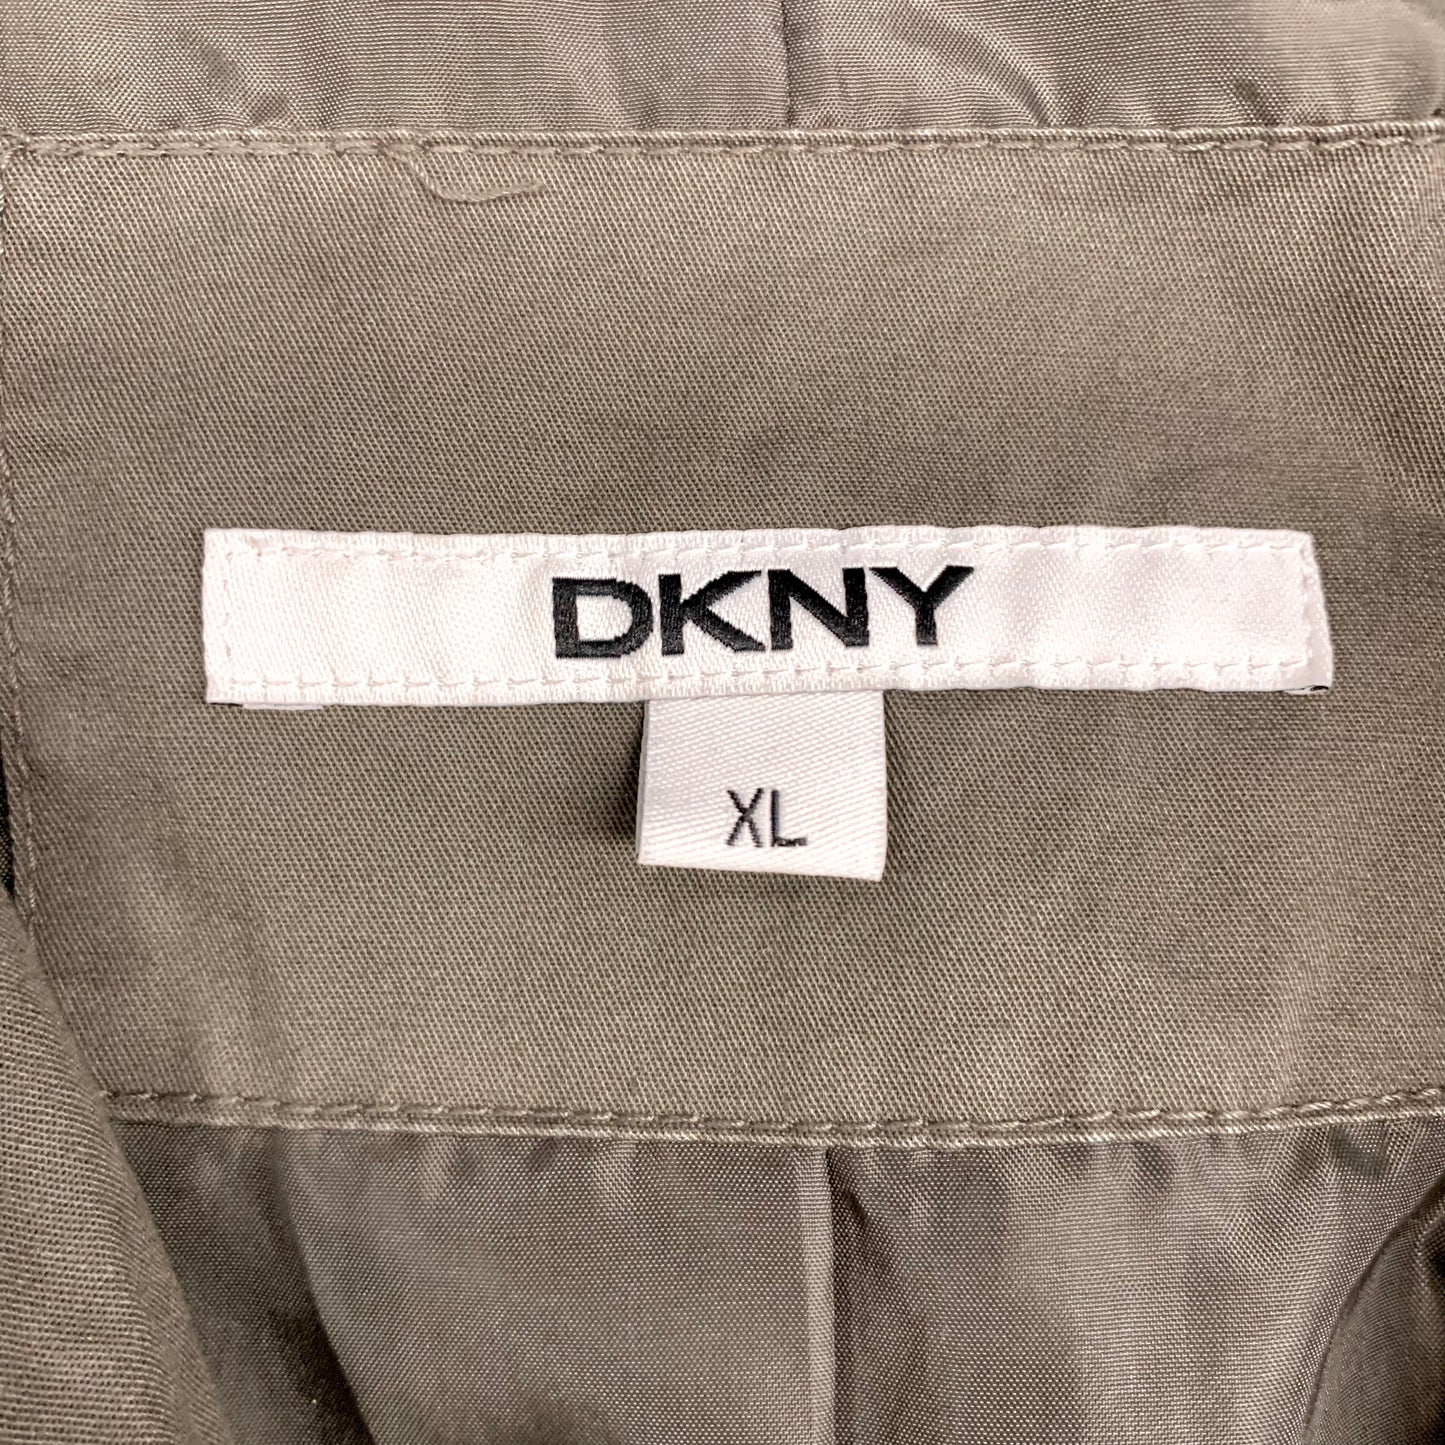 Jacket Utility By Dkny  Size: Xl